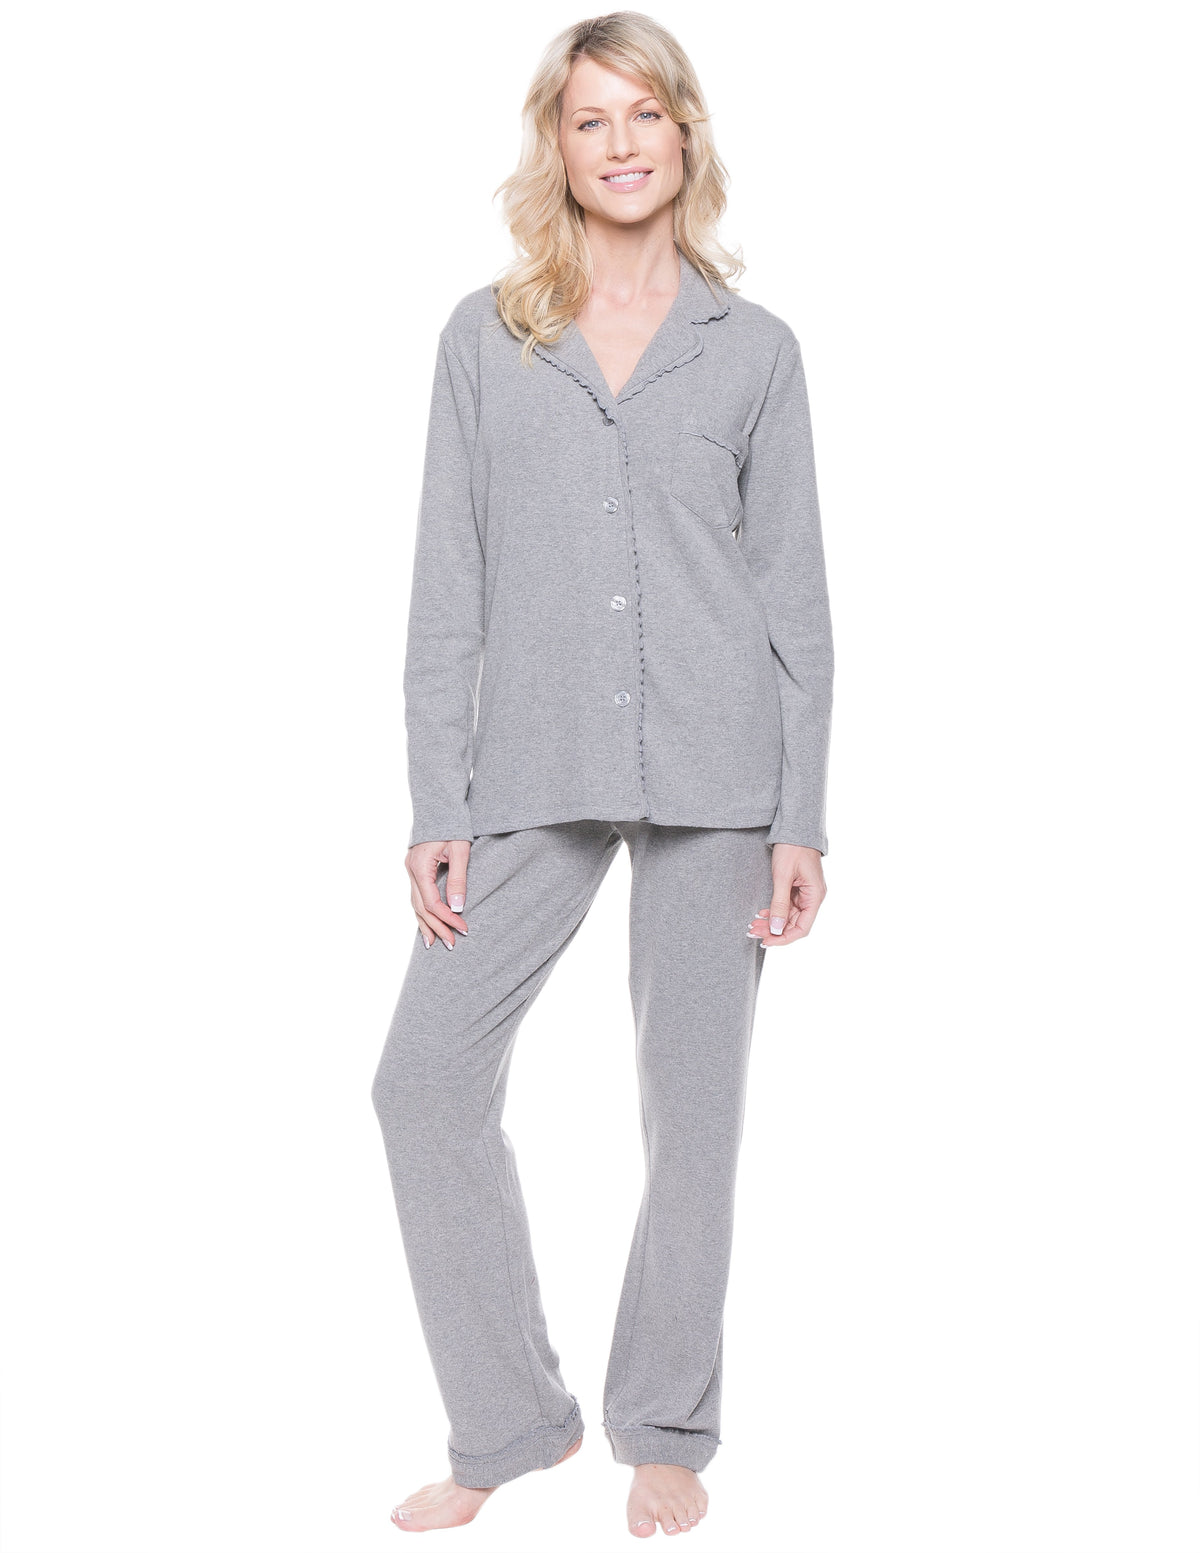 Women's Cozy Rib Pajama Sleepwear Set - Heather Grey